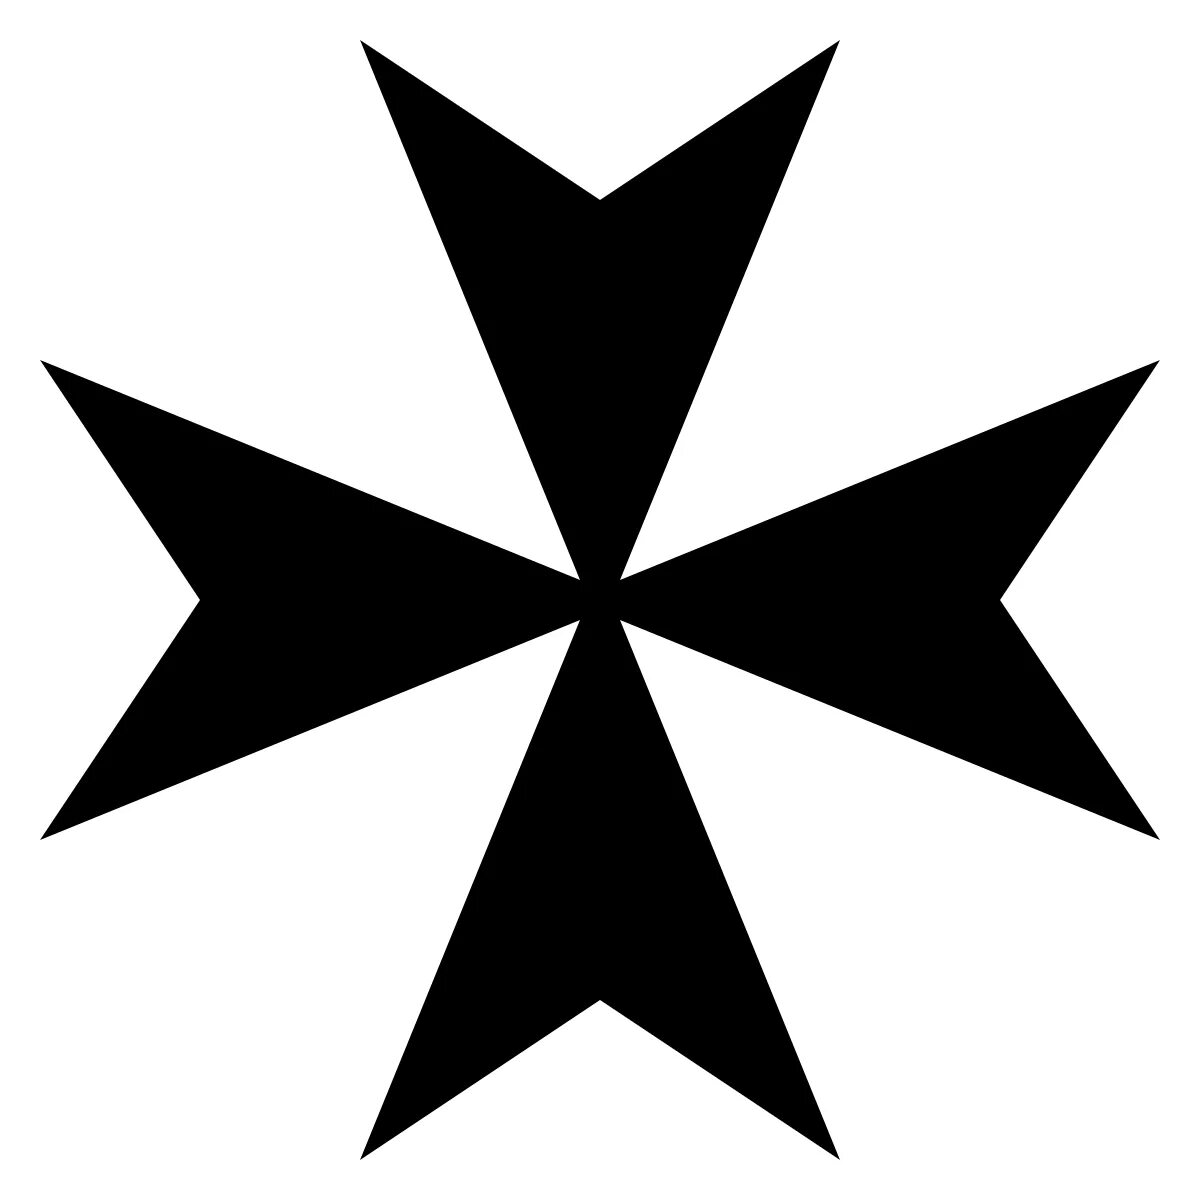 Крест Мальтийского ордена госпитальеров. Мальтийский крест – Maltese Cross. Мальтийский – восьмиконечный крест ордена тамплиеров. Крест Cross Pattee. Мальтийский крест это